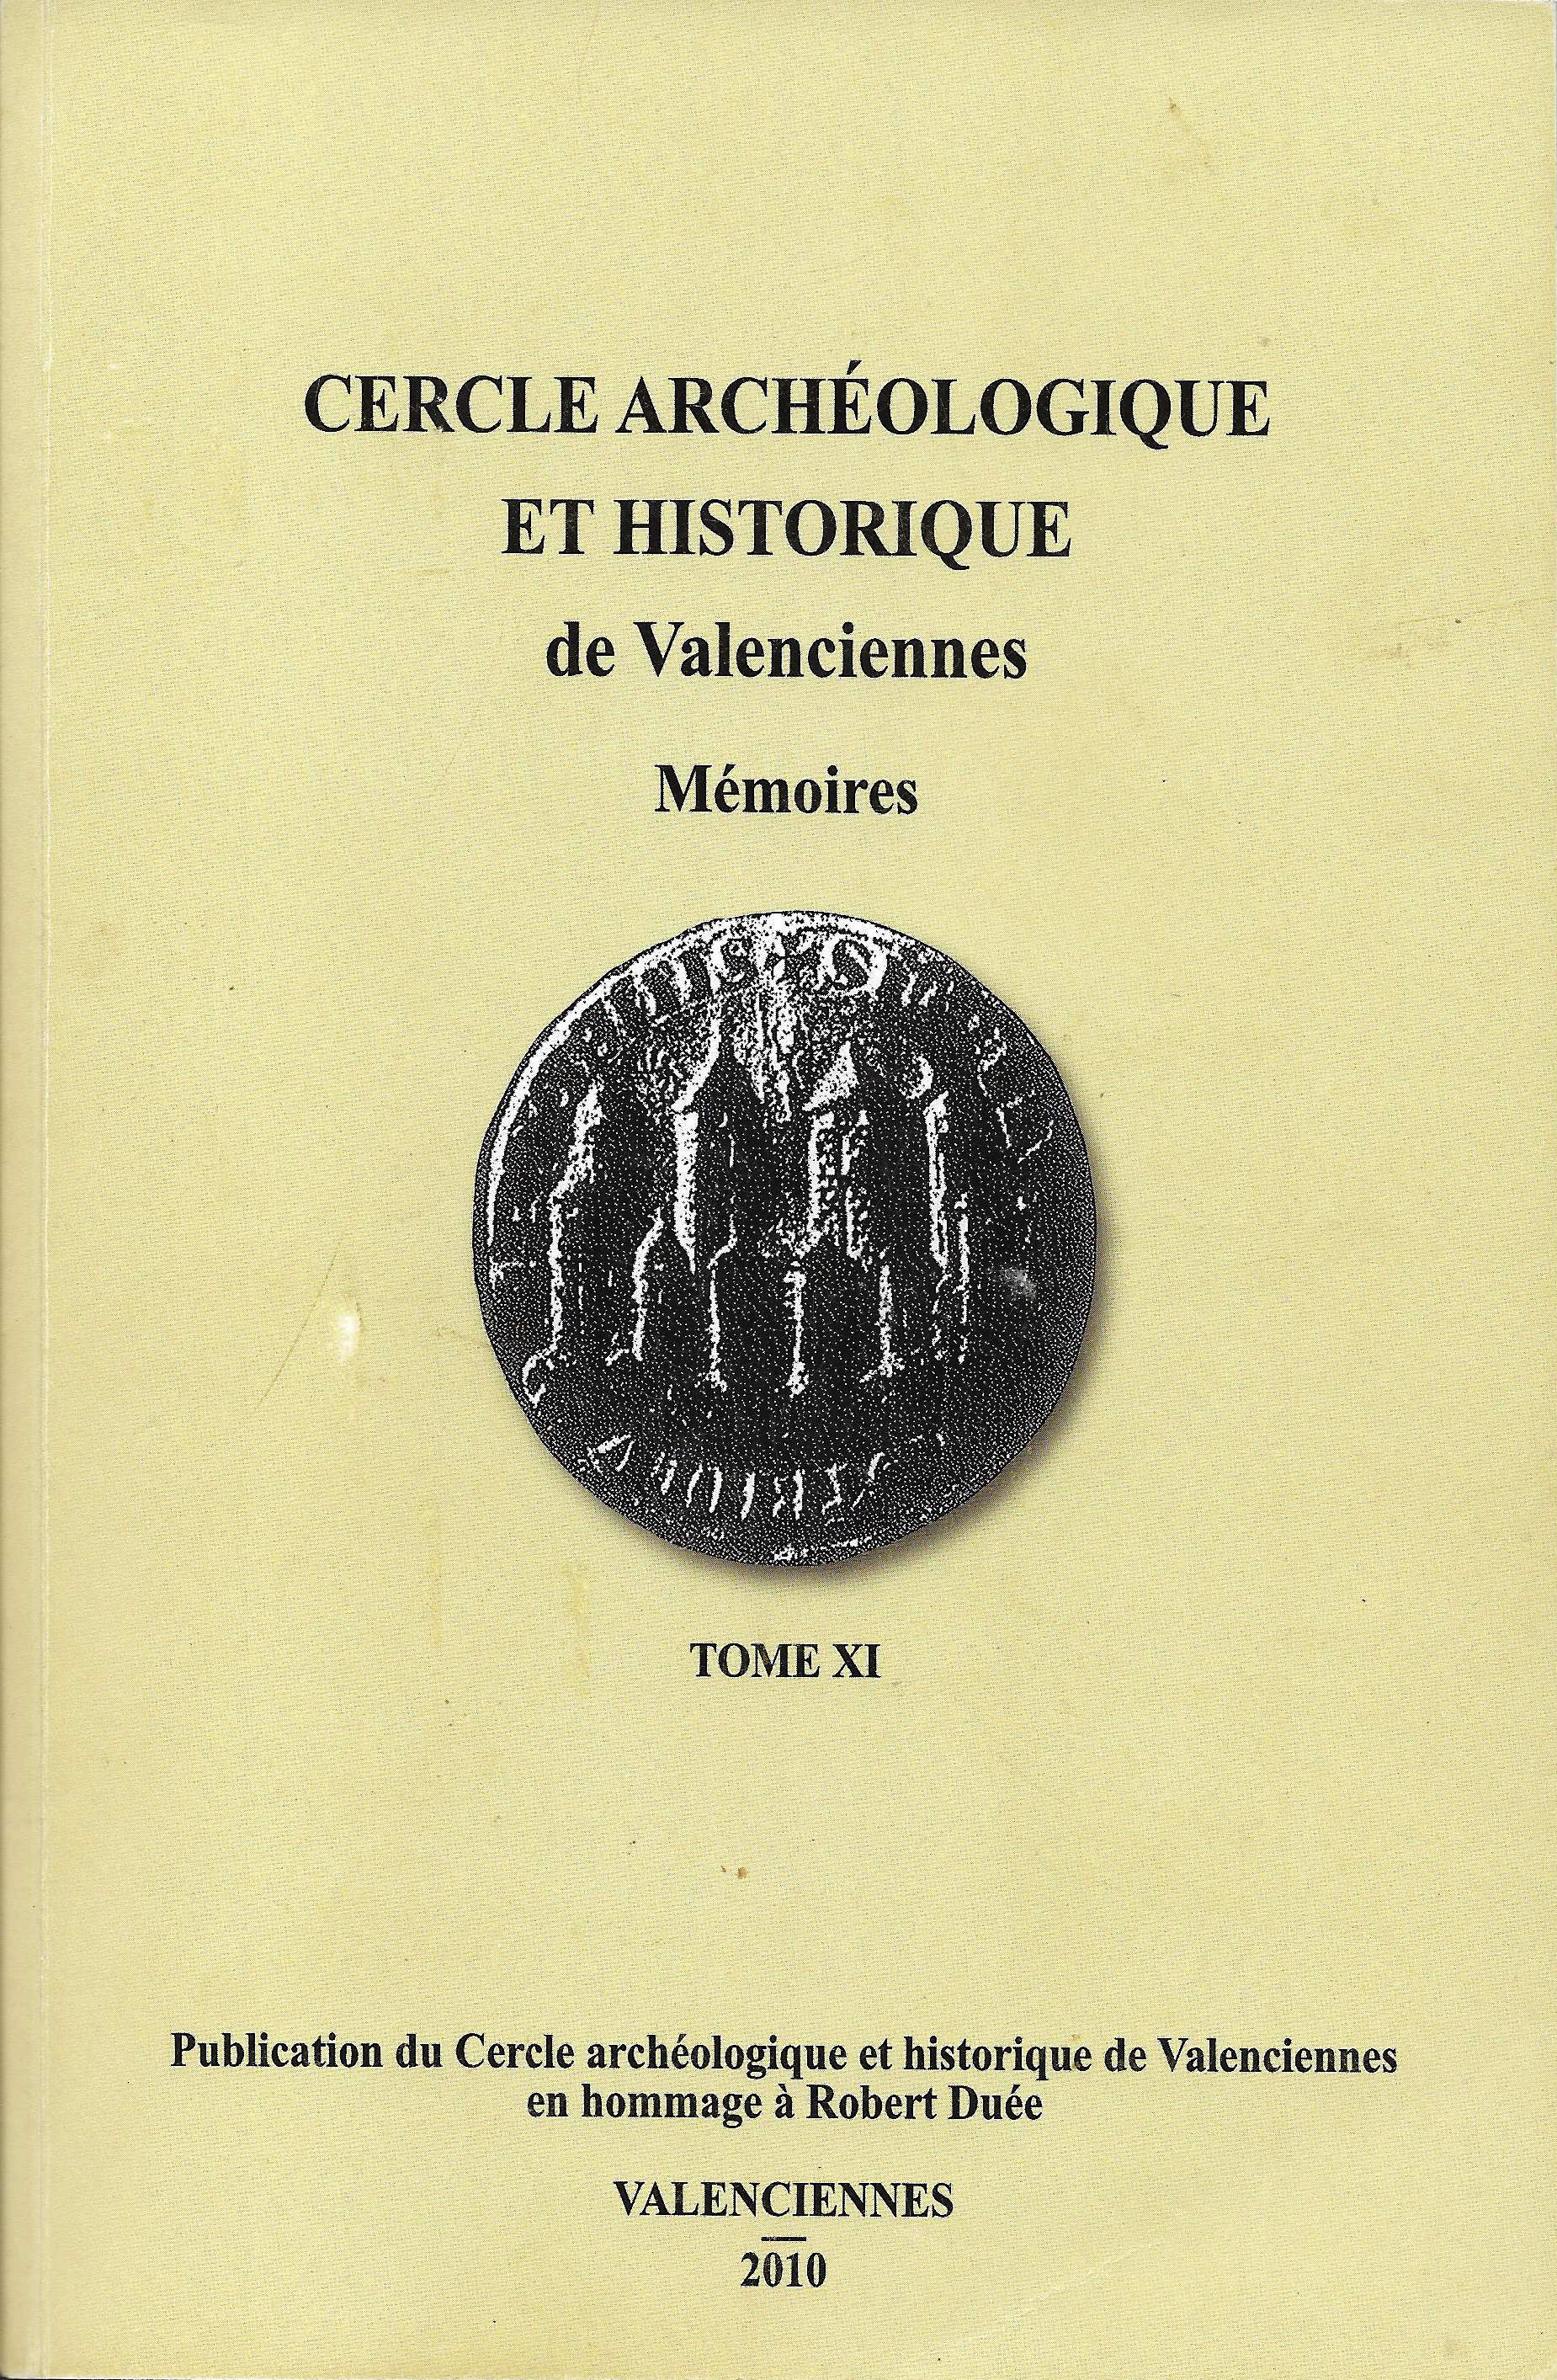 					Afficher Vol. 11 No. 1 (2010): Cercle Archéologique et Historique de Valenciennes - Mémoires - Tome XI
				